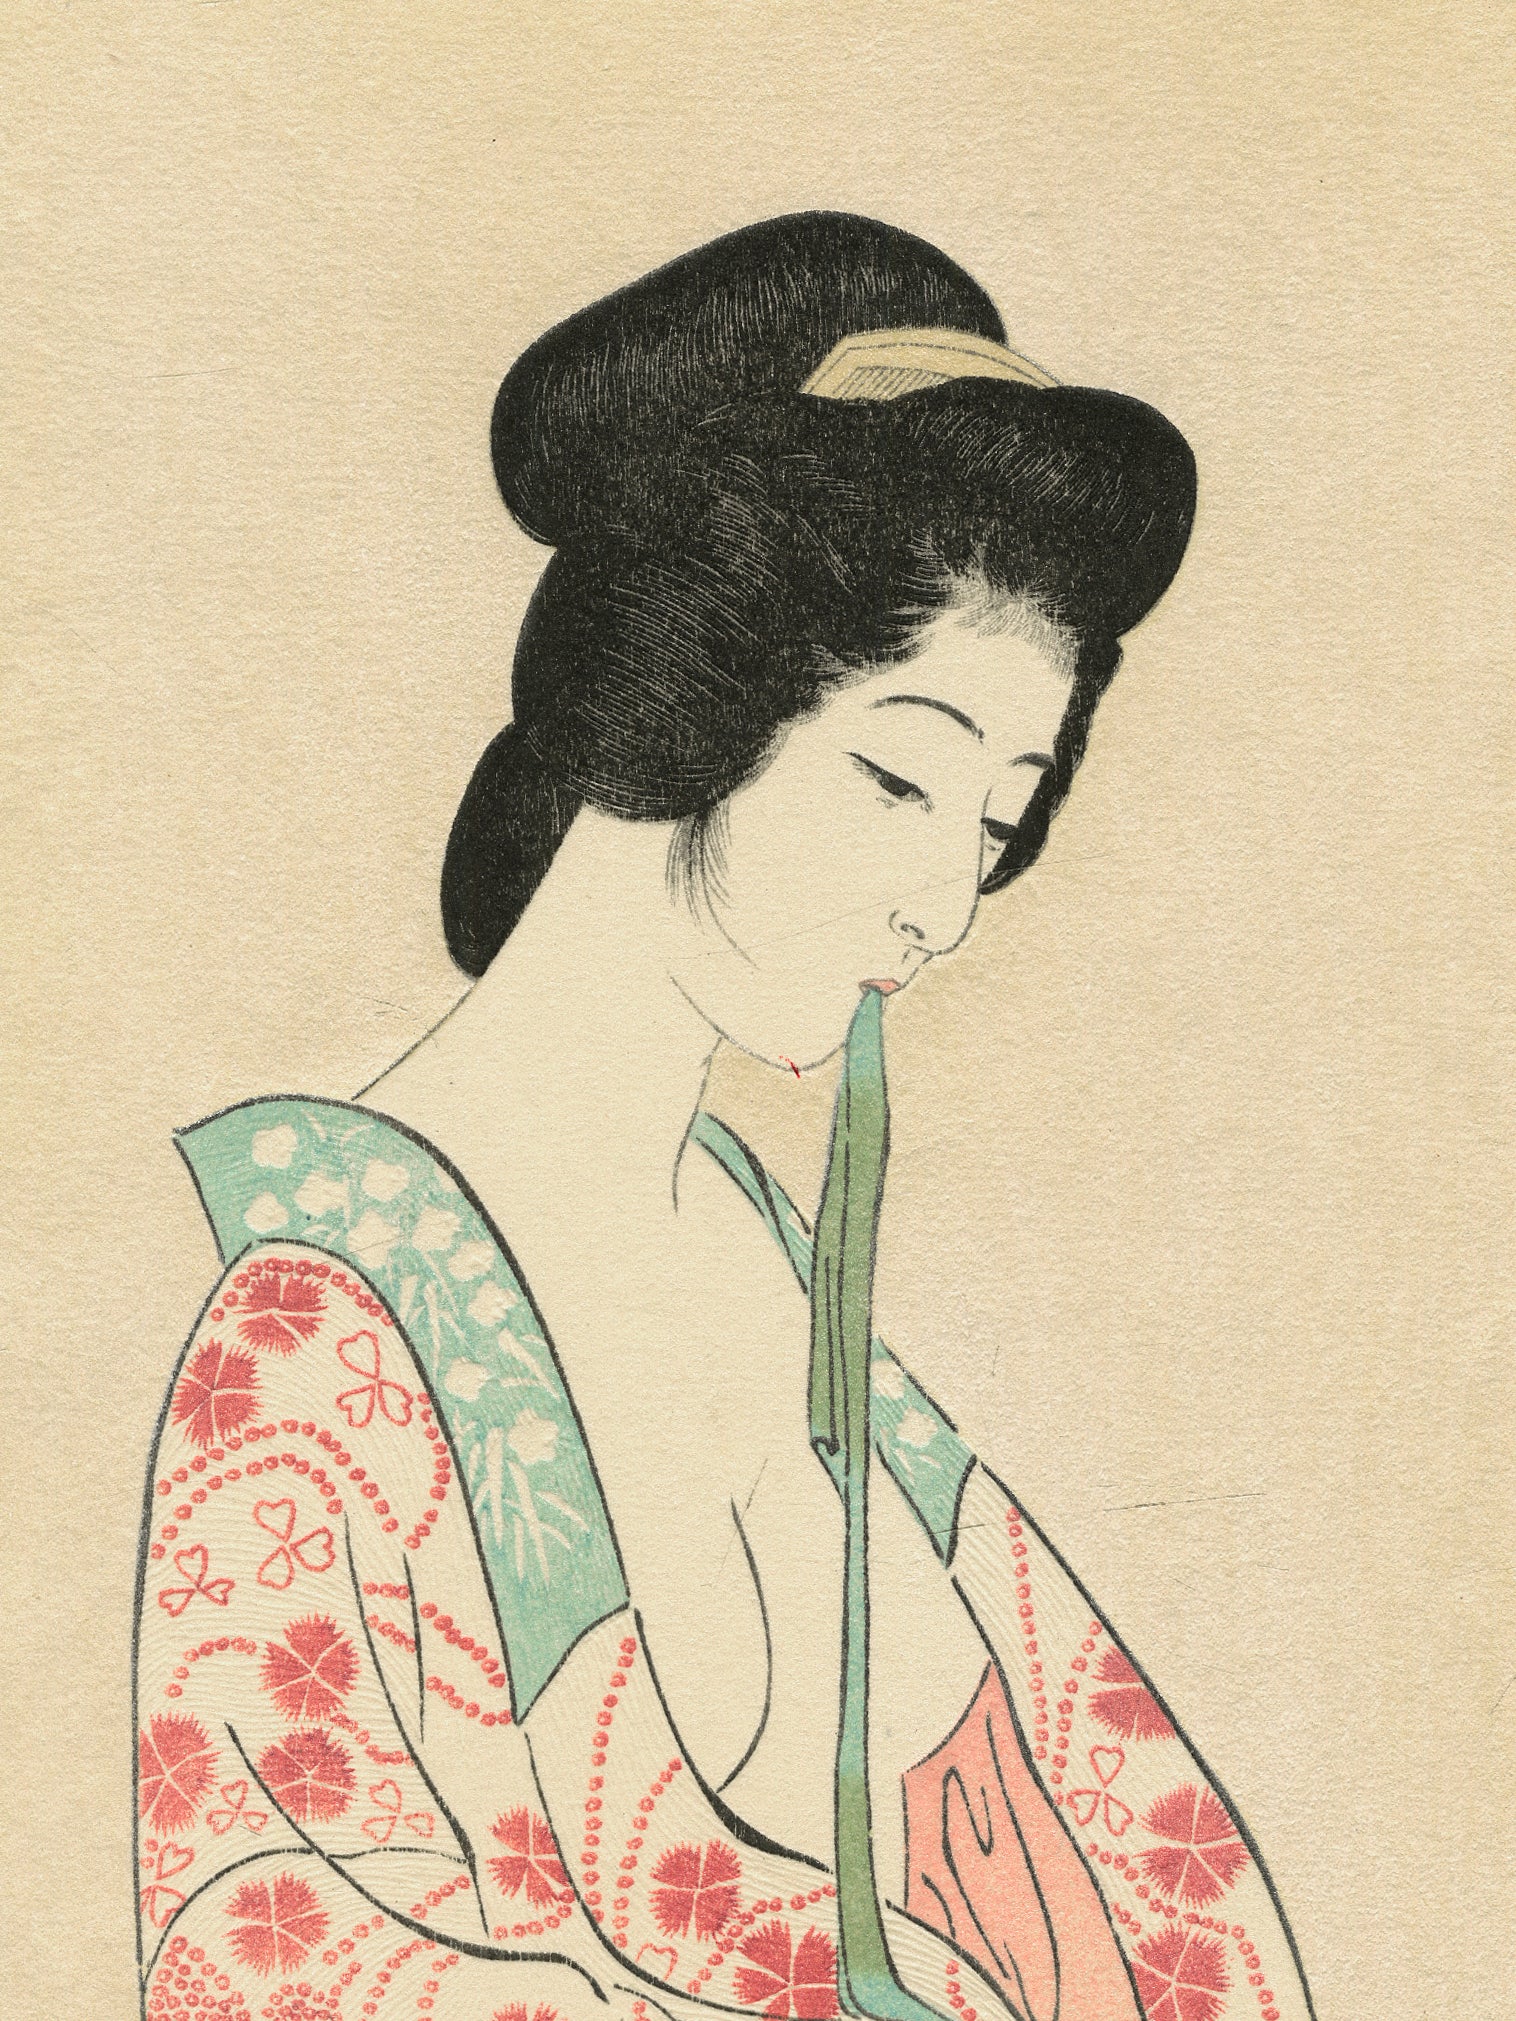 Estampe Japonaise de femme nue enfilant un kimono léger fleuri de printemps, le visage